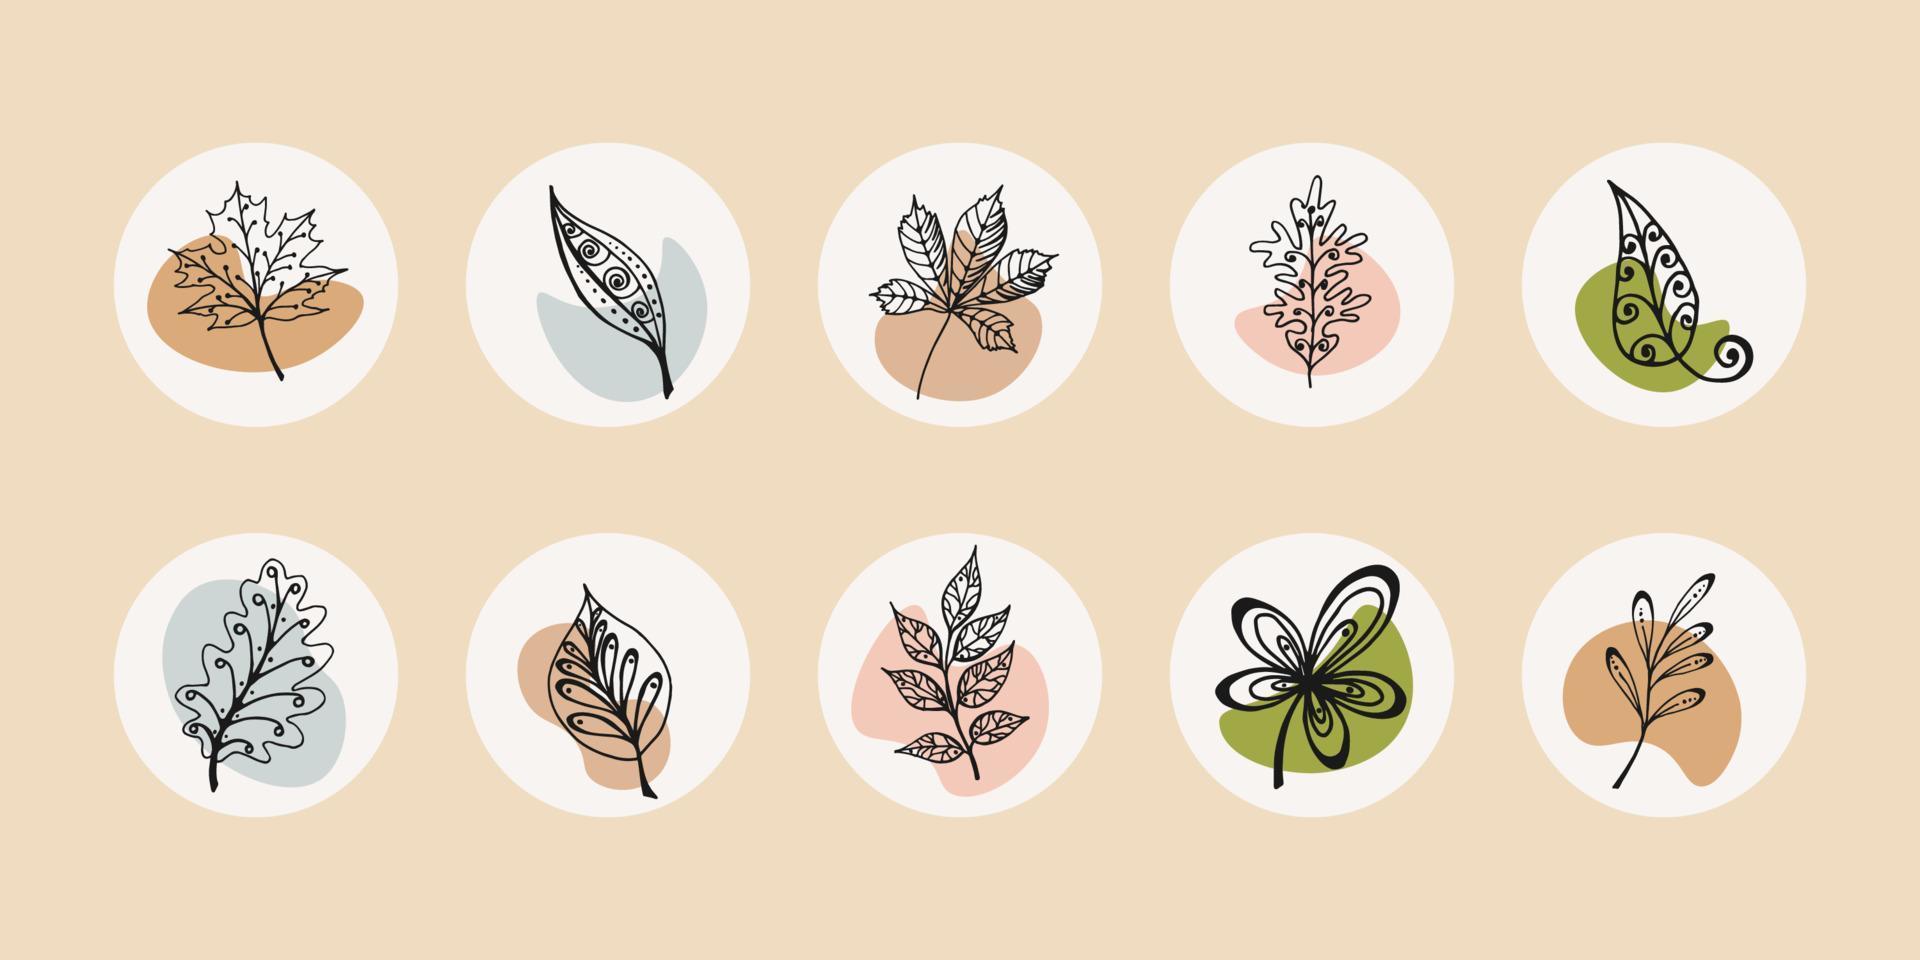 iconos de redes sociales: hojas botánicas, flores silvestres, portadas destacadas, iconos de diseño floral, ilustración vectorial. iconos de otoño en estilo garabato. vector